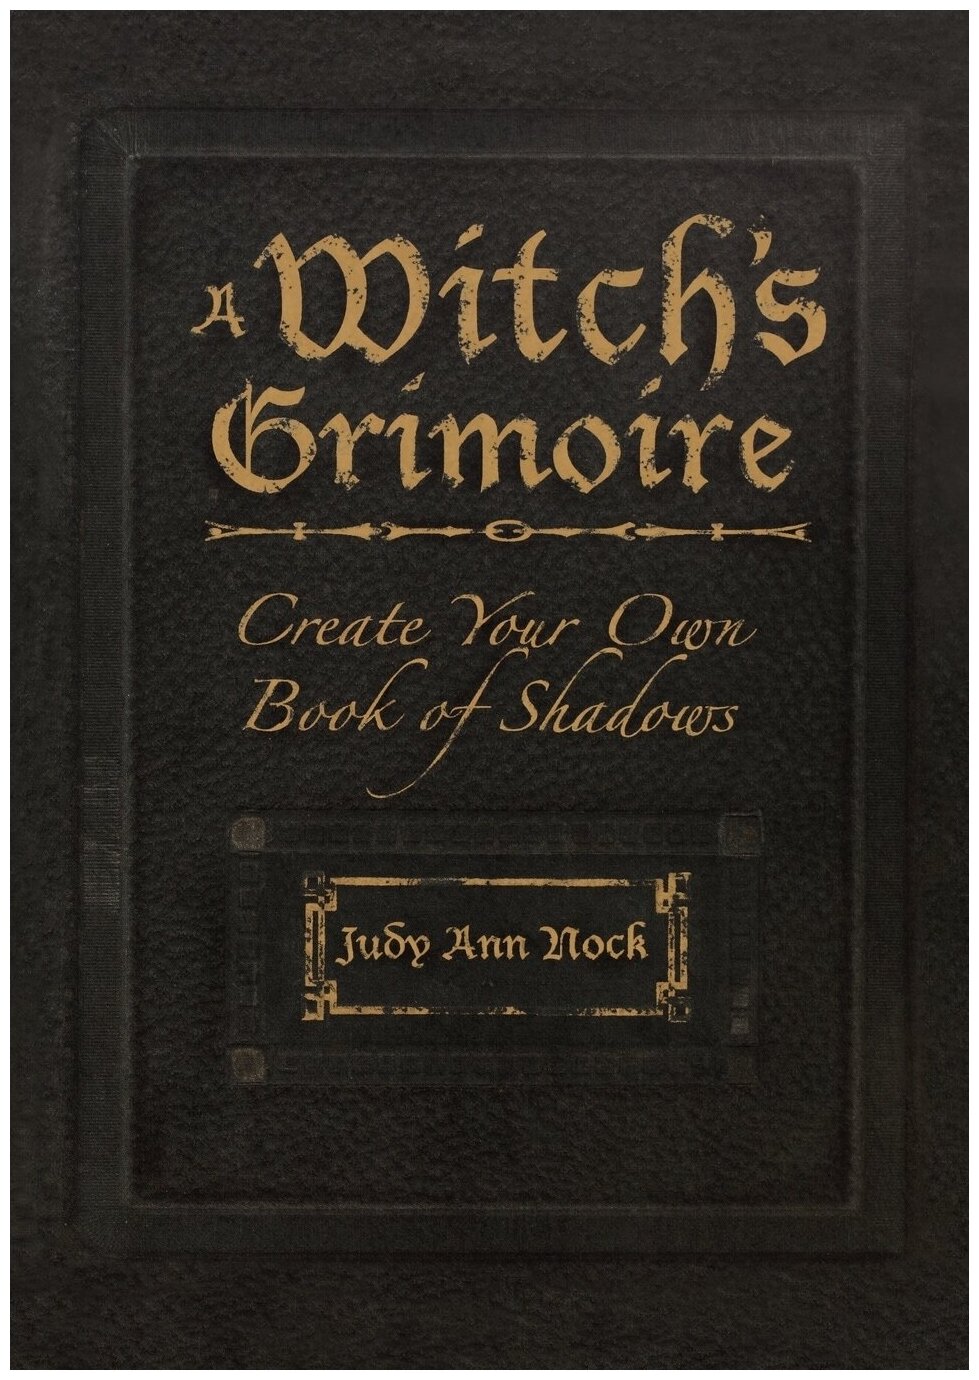 A Witch's Grimoire. Гримуар ведьмы: на англ. яз.